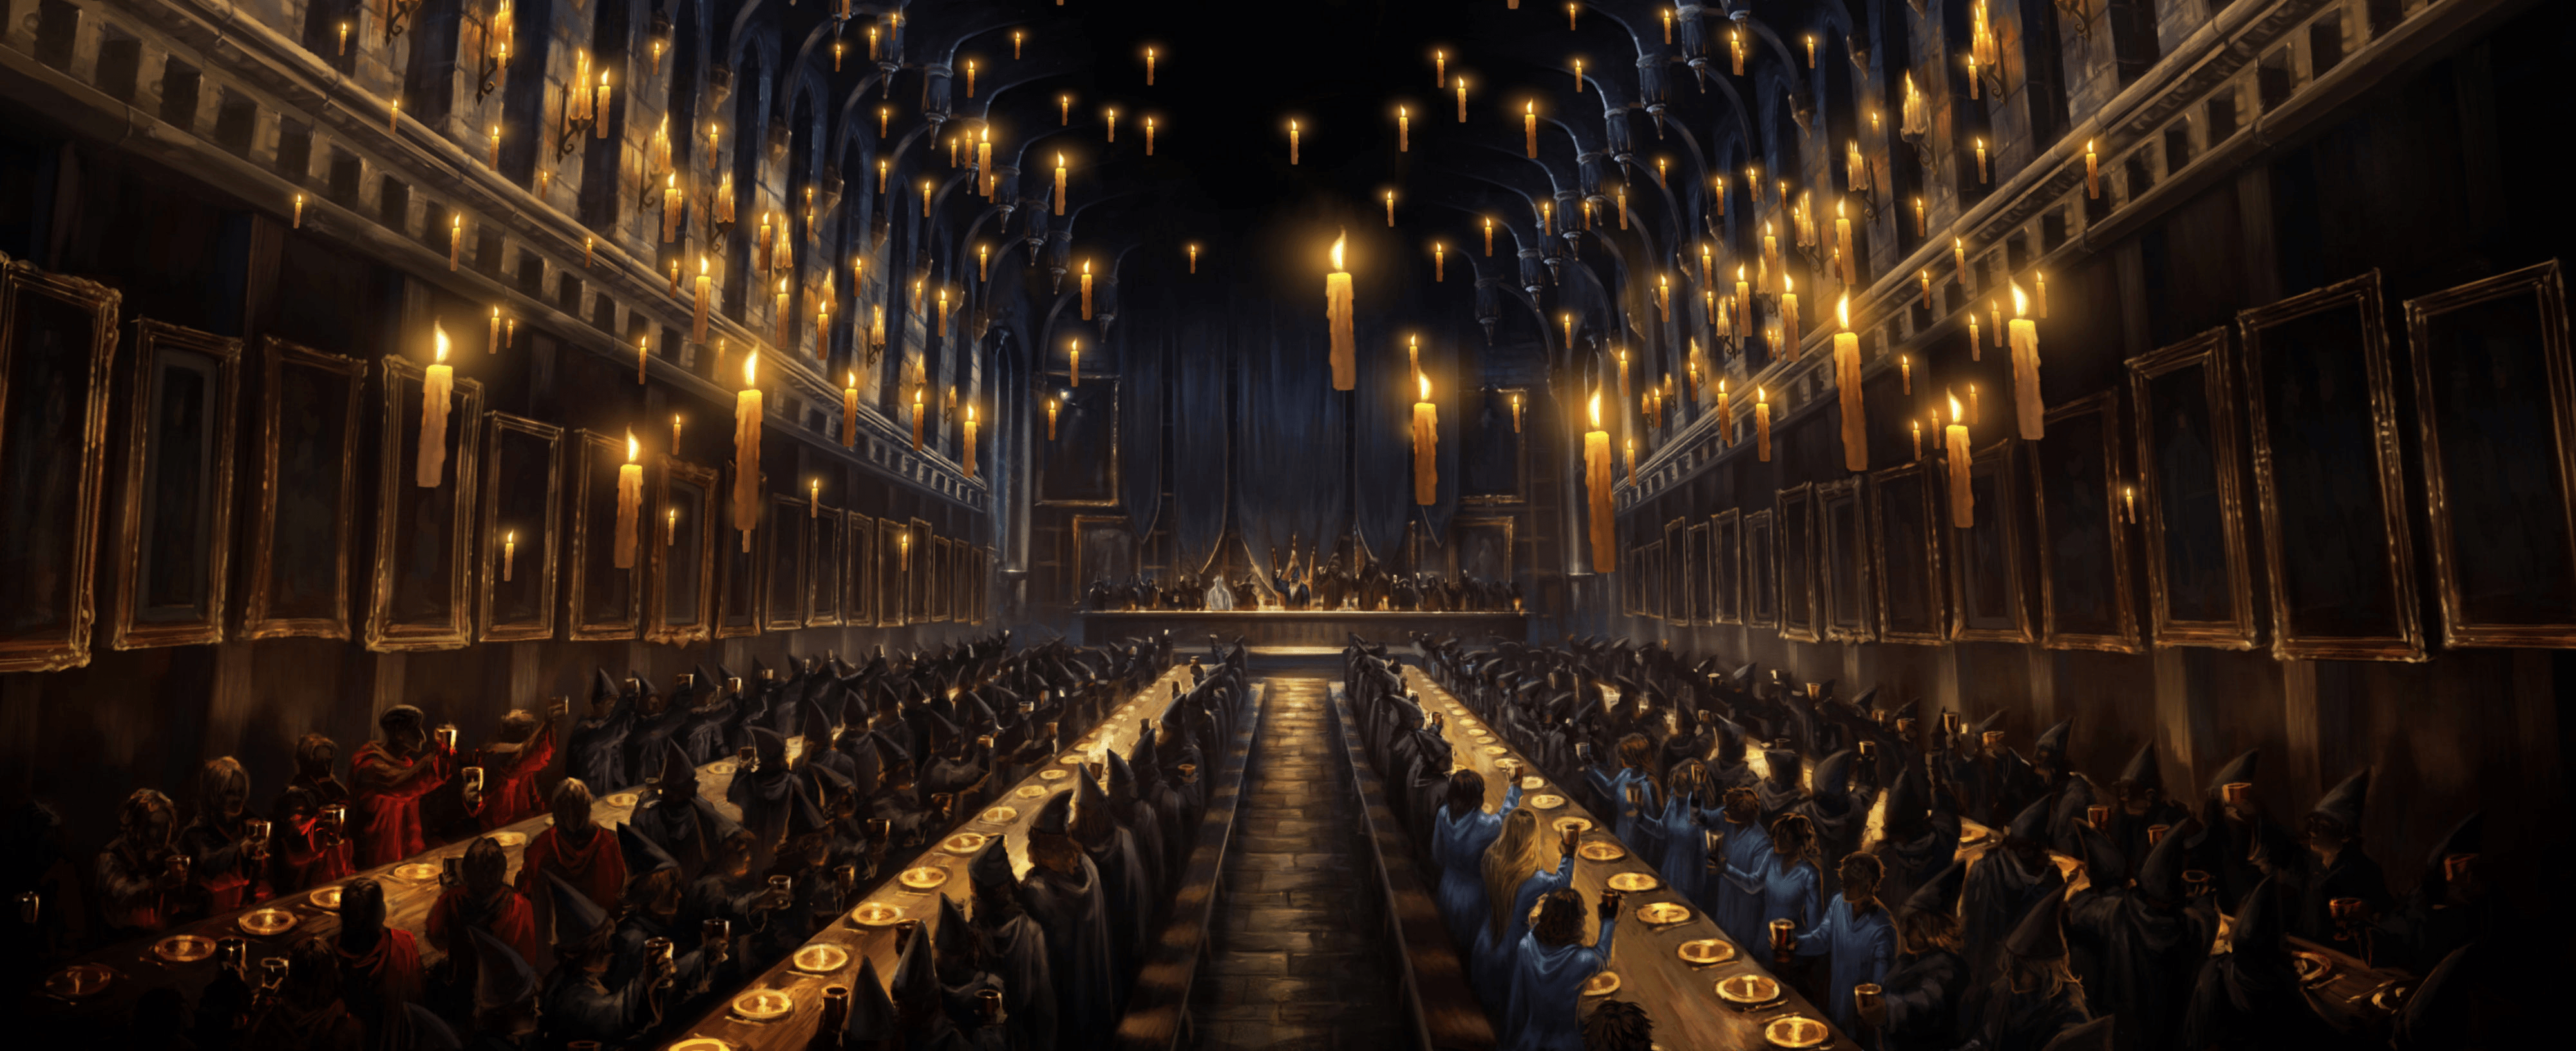 Chào mừng đến phòng hội của Harry Potter! Tận mắt chứng kiến không gian phong phú và đầy ấn tượng với các loát ánh đèn màu vàng ấm áp. Bạn sẽ có cơ hội thực hiện điều ước với vòng quay Sói và Thằn lằn.